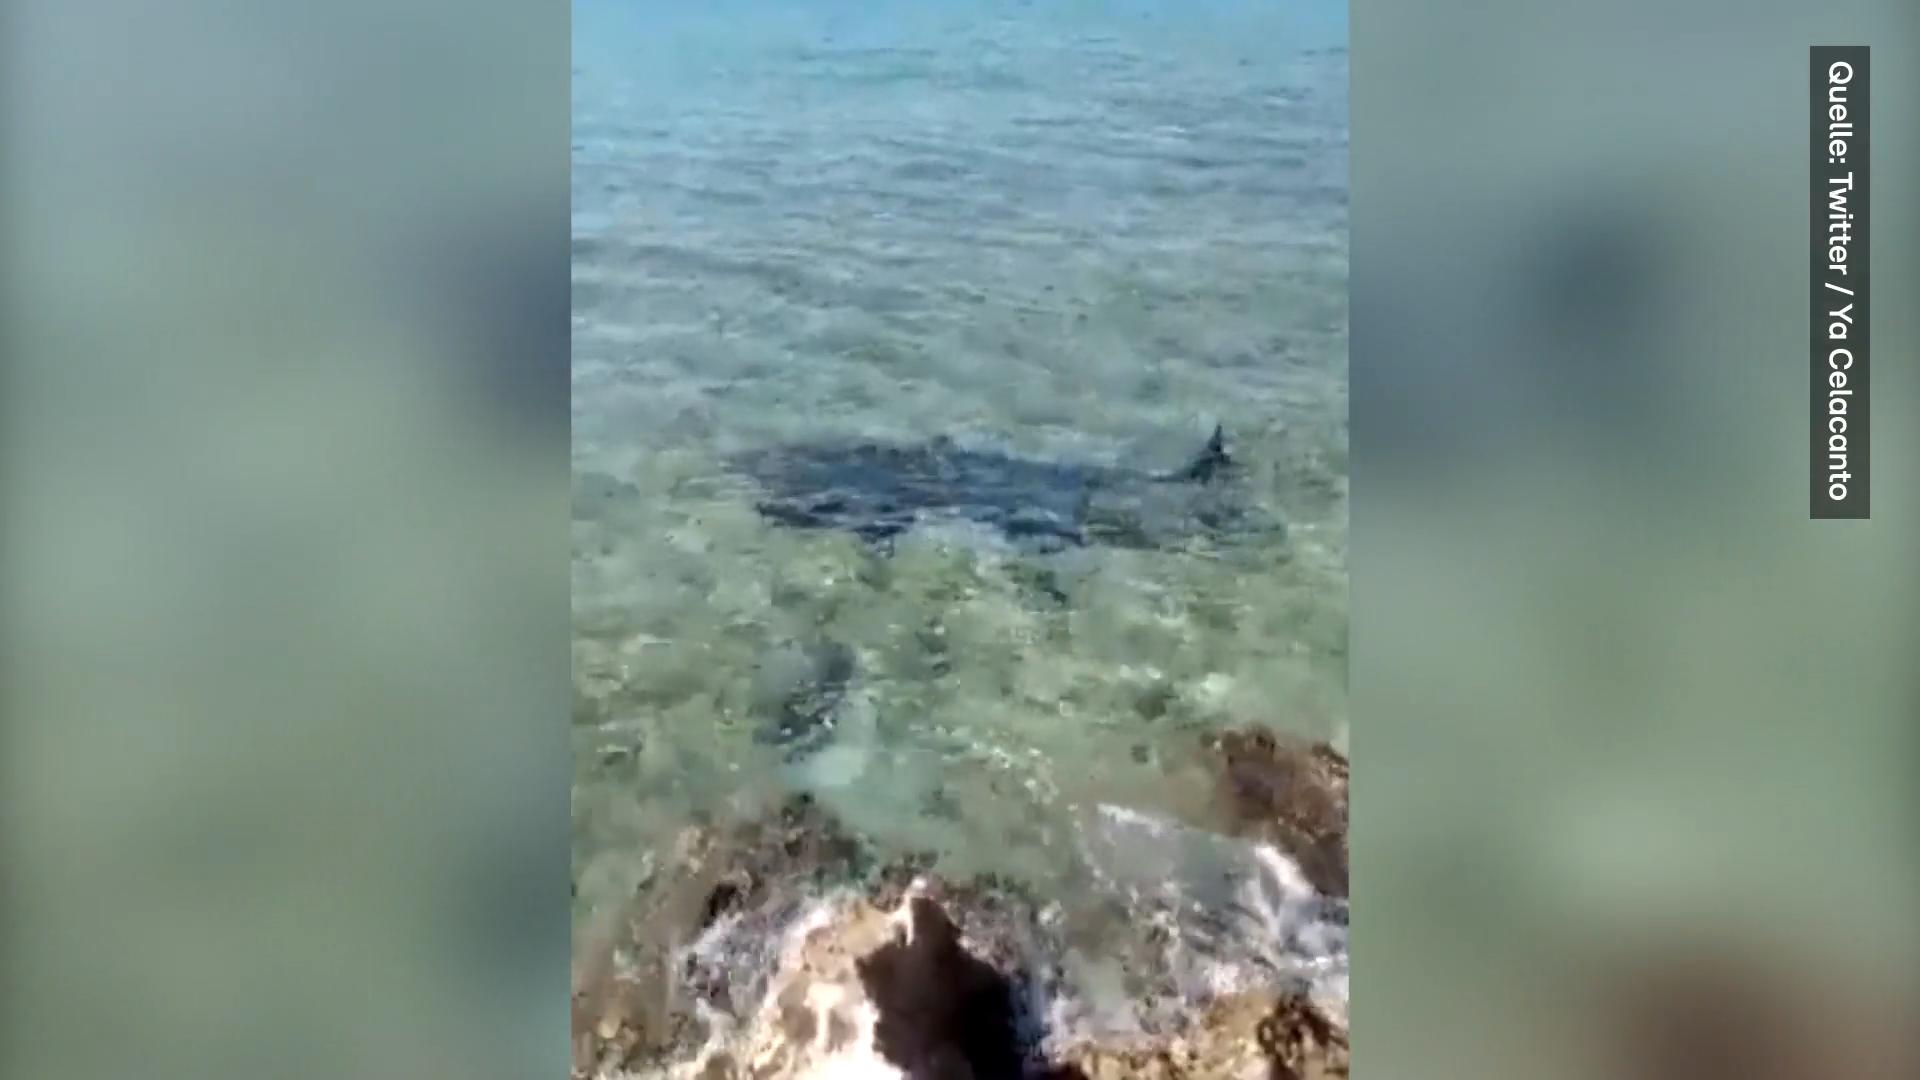 Hai-Attacke im Urlaub! Italiener stirbt nach tödlichem Biss In der Karibik